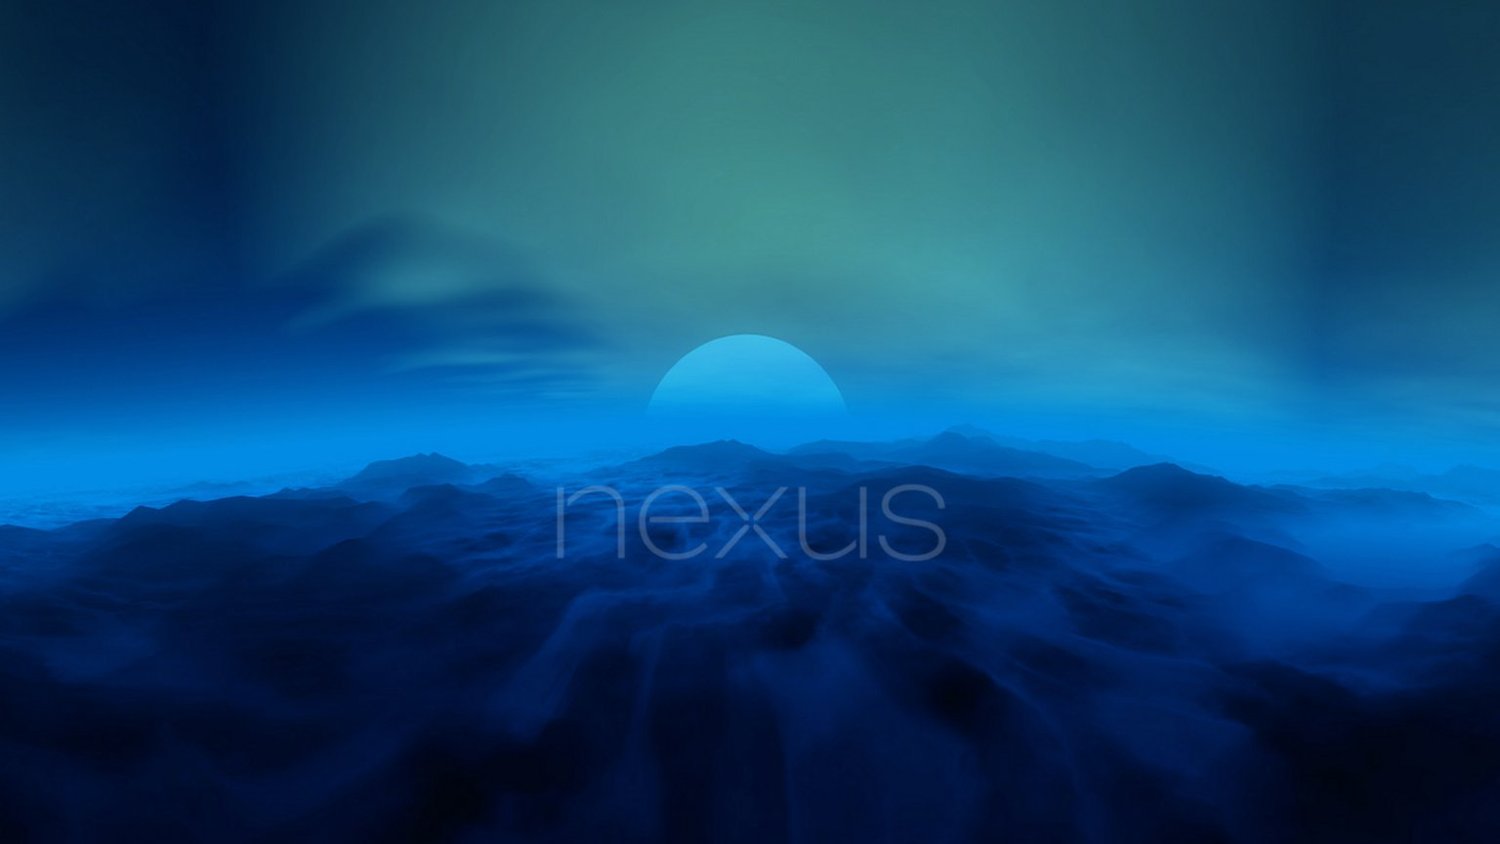 Завершится ли эпоха Nexus в этом году? Возможен новый бренд смартфонов Google. Фото.